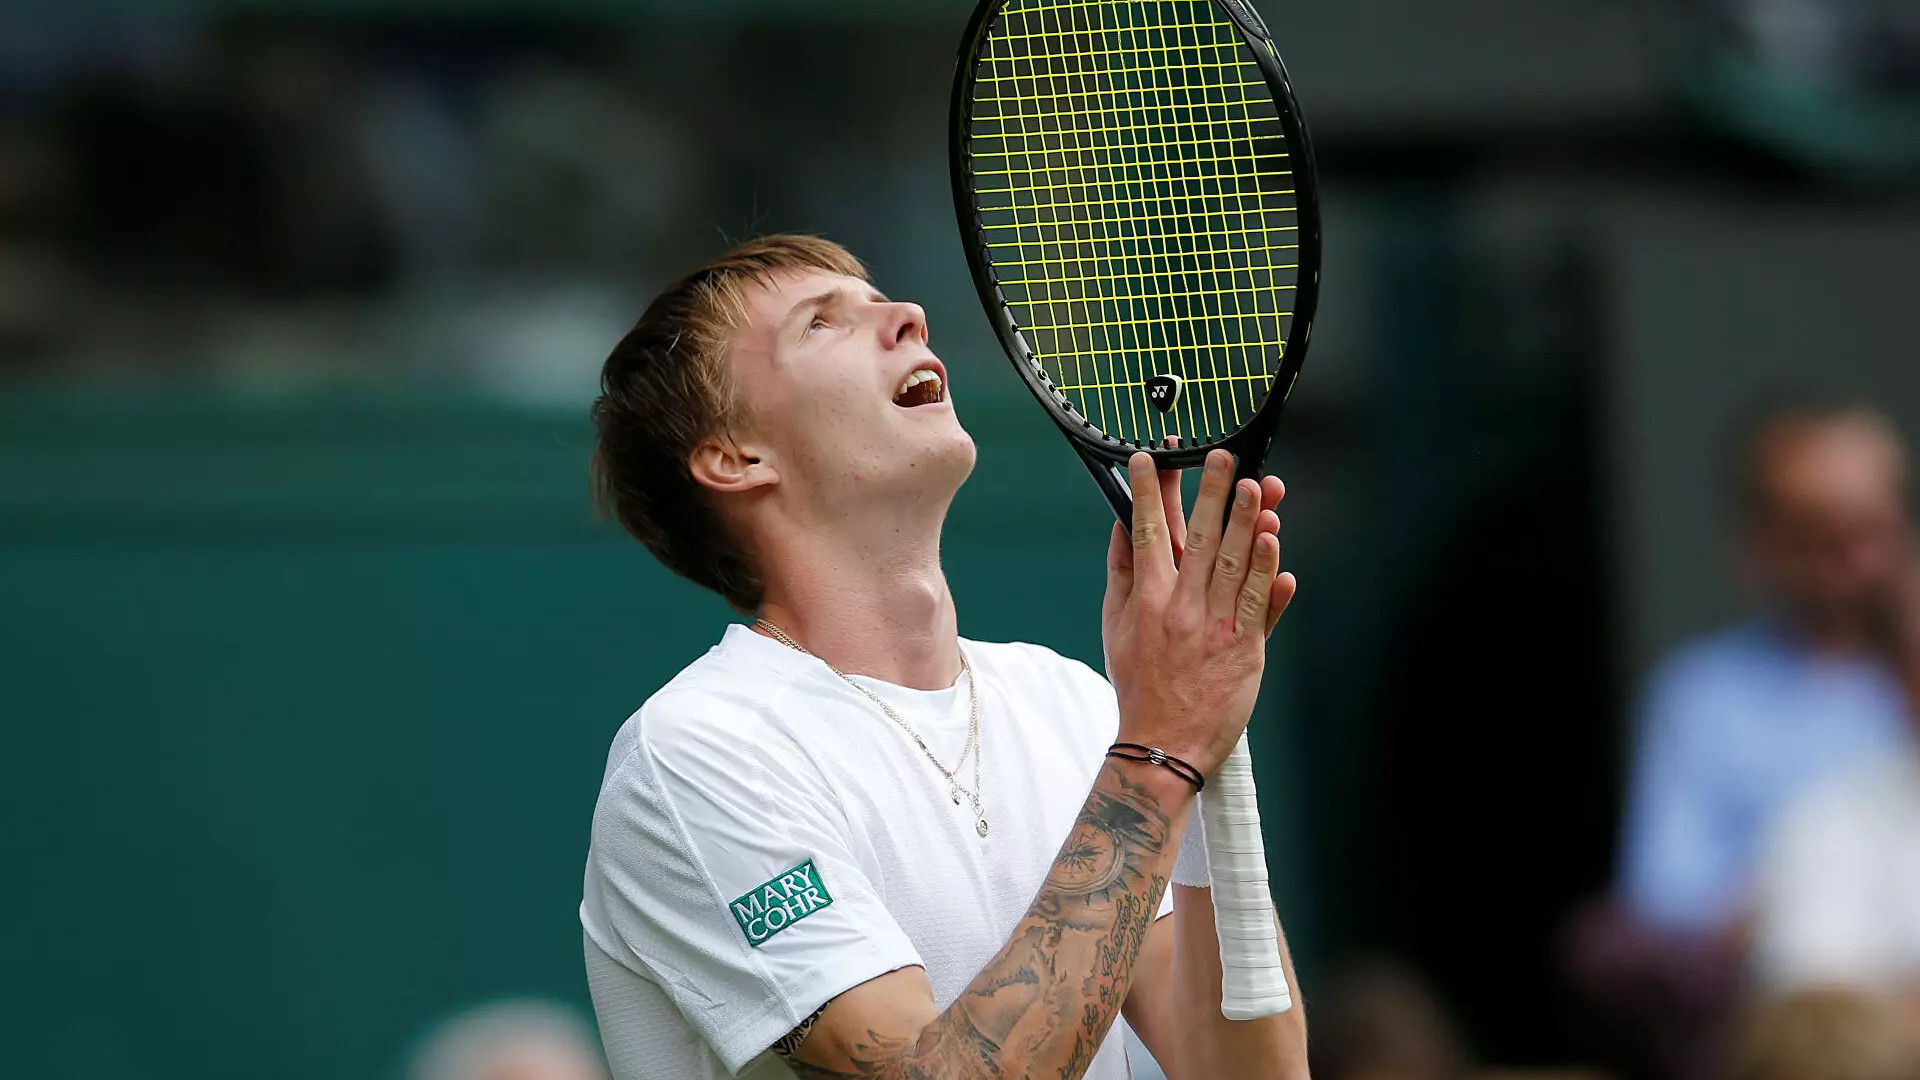 Теннисист Александр Бублик удостоился оваций после победы на турнире в Риме